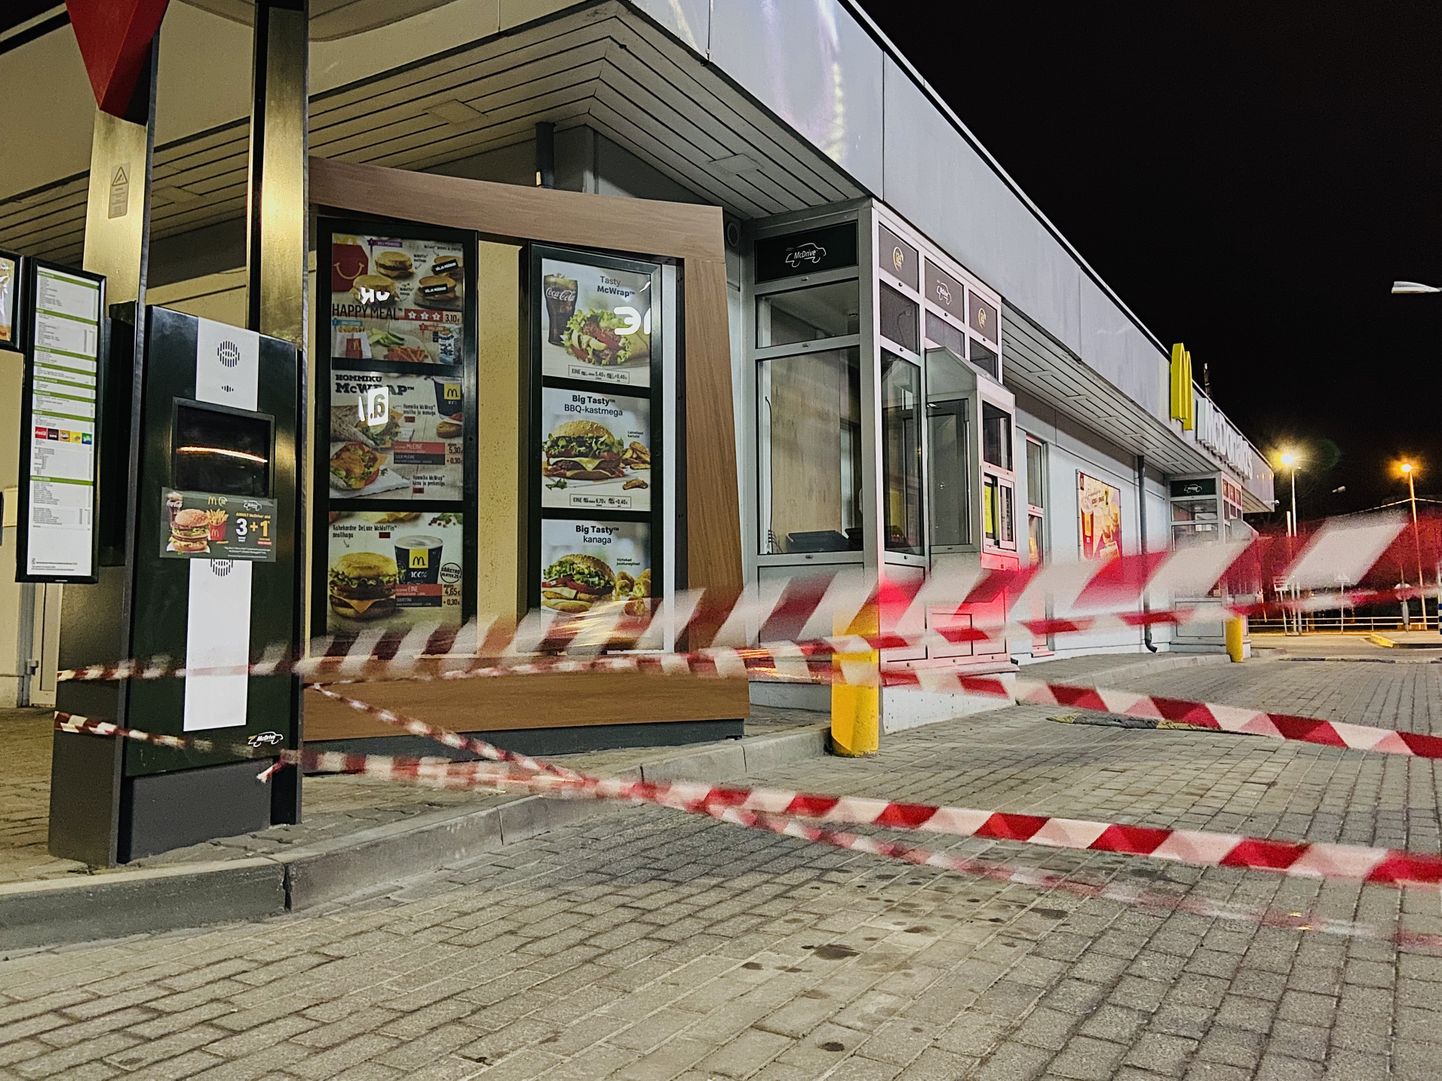 Нарвский ресторан сети быстрого питания "McDonald"s" 31 марта закрылся из-за выявленного у работника коронавируса.